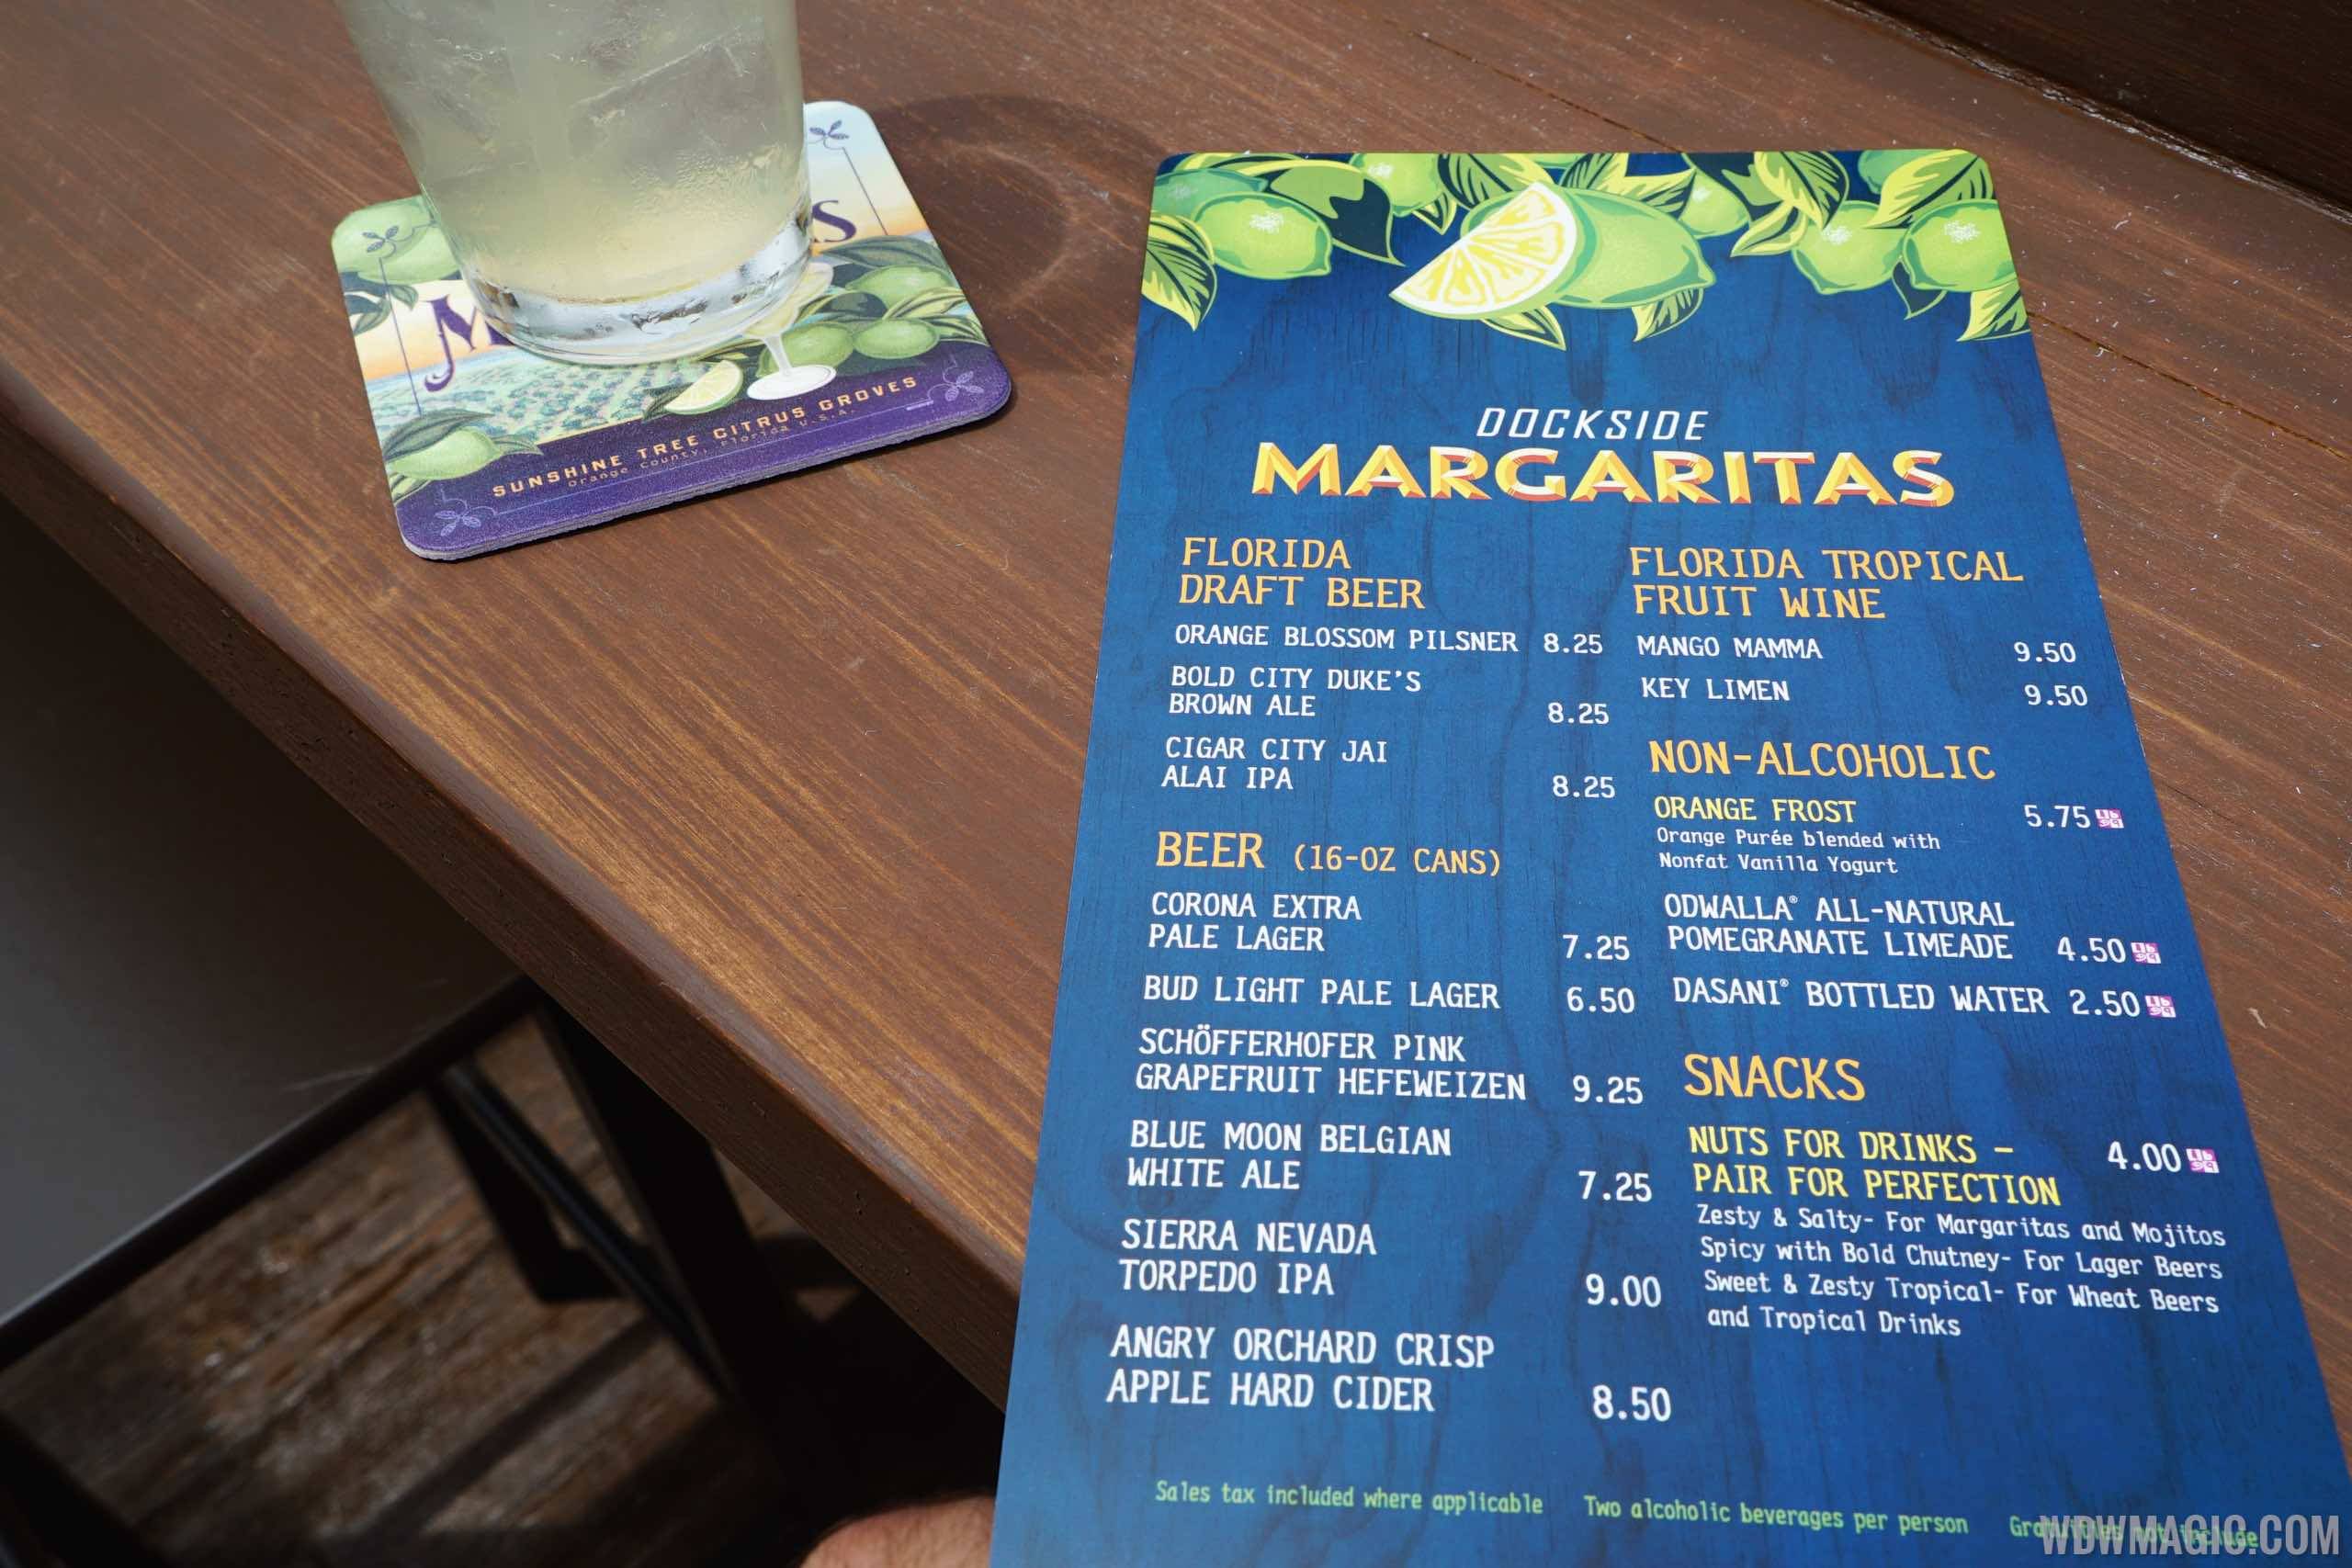 Dockside Margaritas overview